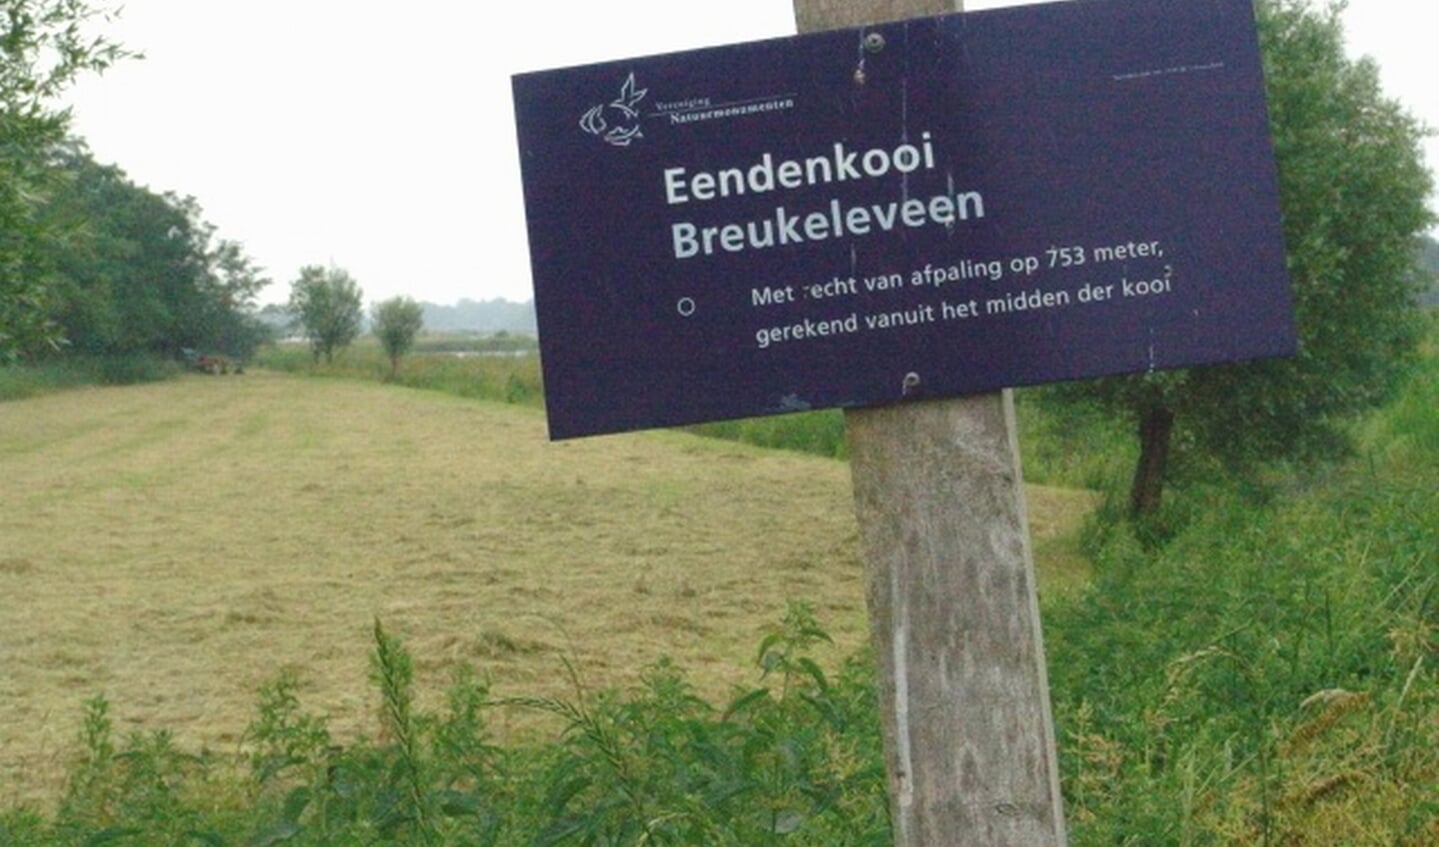 Bordje bij het hek op de weg langs het Tienhovens kanaal, met daarop de vermelding van een oud Kooirecht.